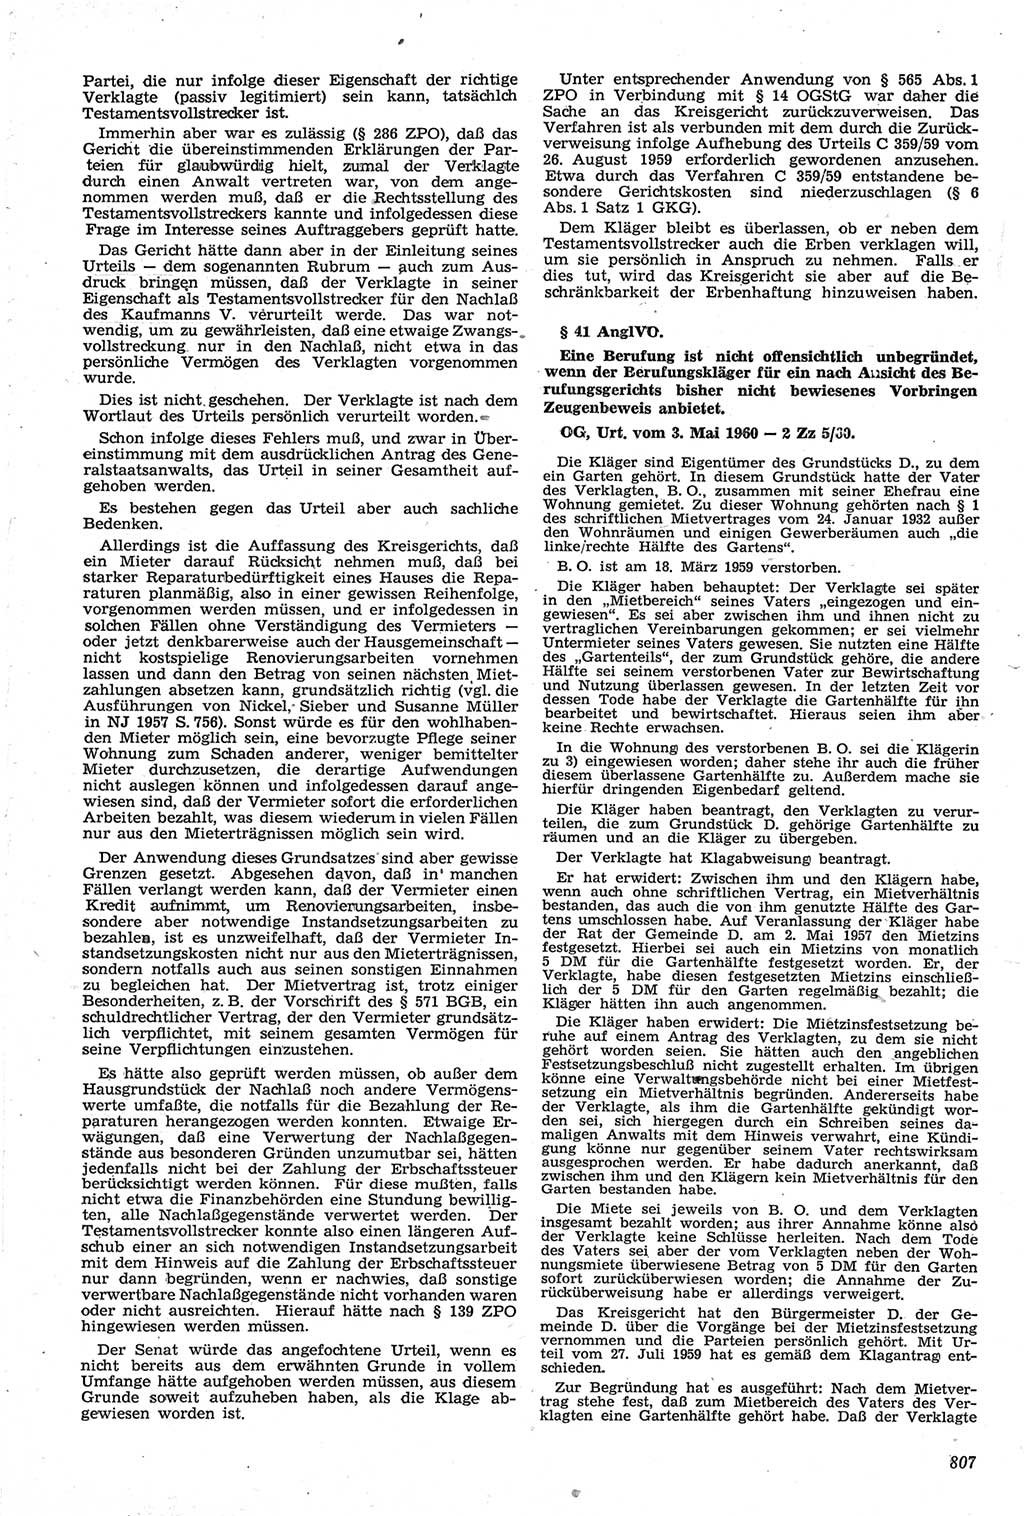 Neue Justiz (NJ), Zeitschrift für Recht und Rechtswissenschaft [Deutsche Demokratische Republik (DDR)], 14. Jahrgang 1960, Seite 807 (NJ DDR 1960, S. 807)